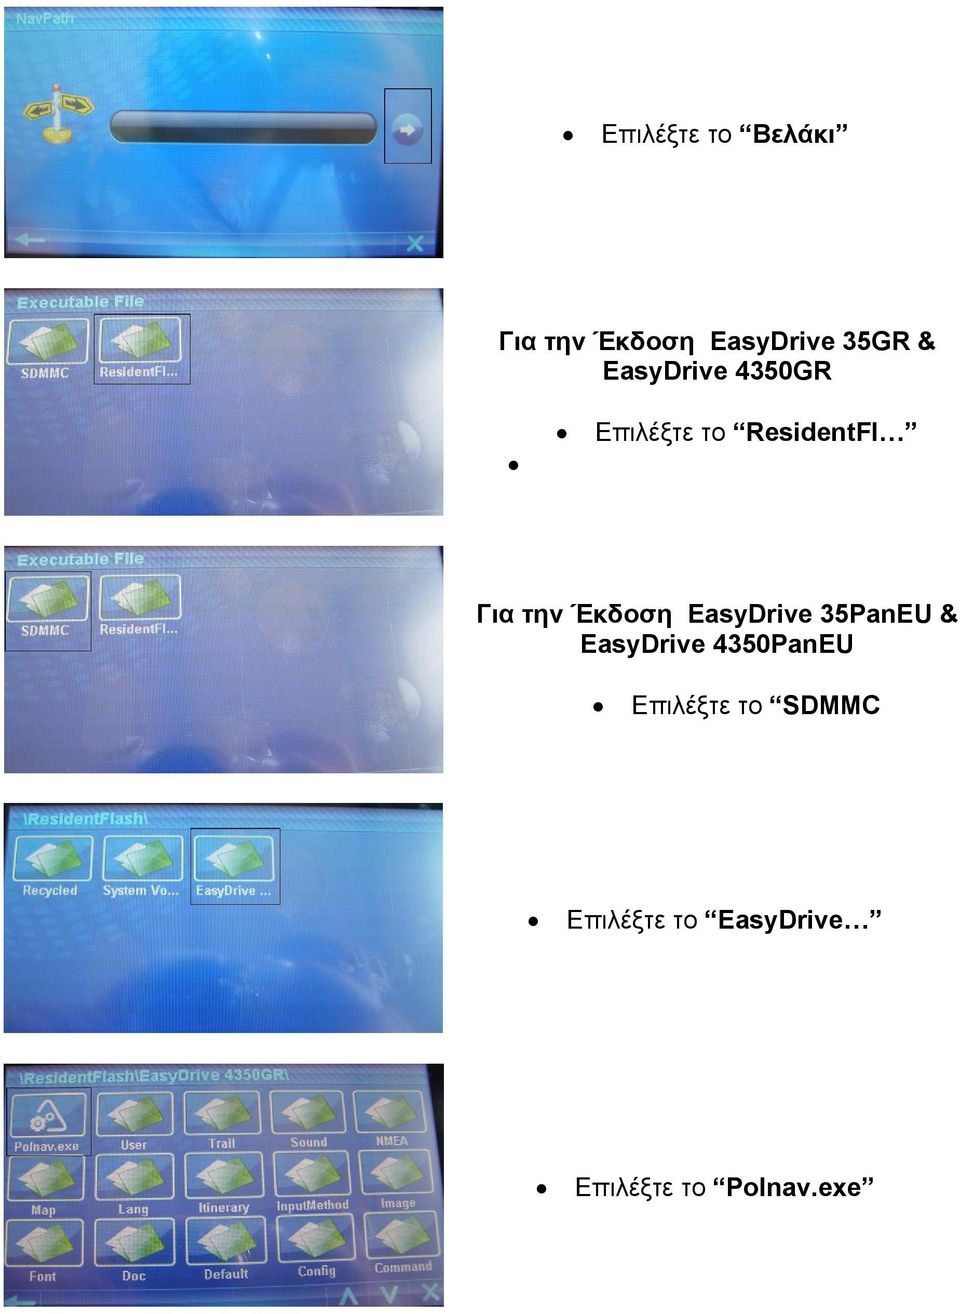 Έκδοση EasyDrive 35PanEU & EasyDrive 4350PanEU